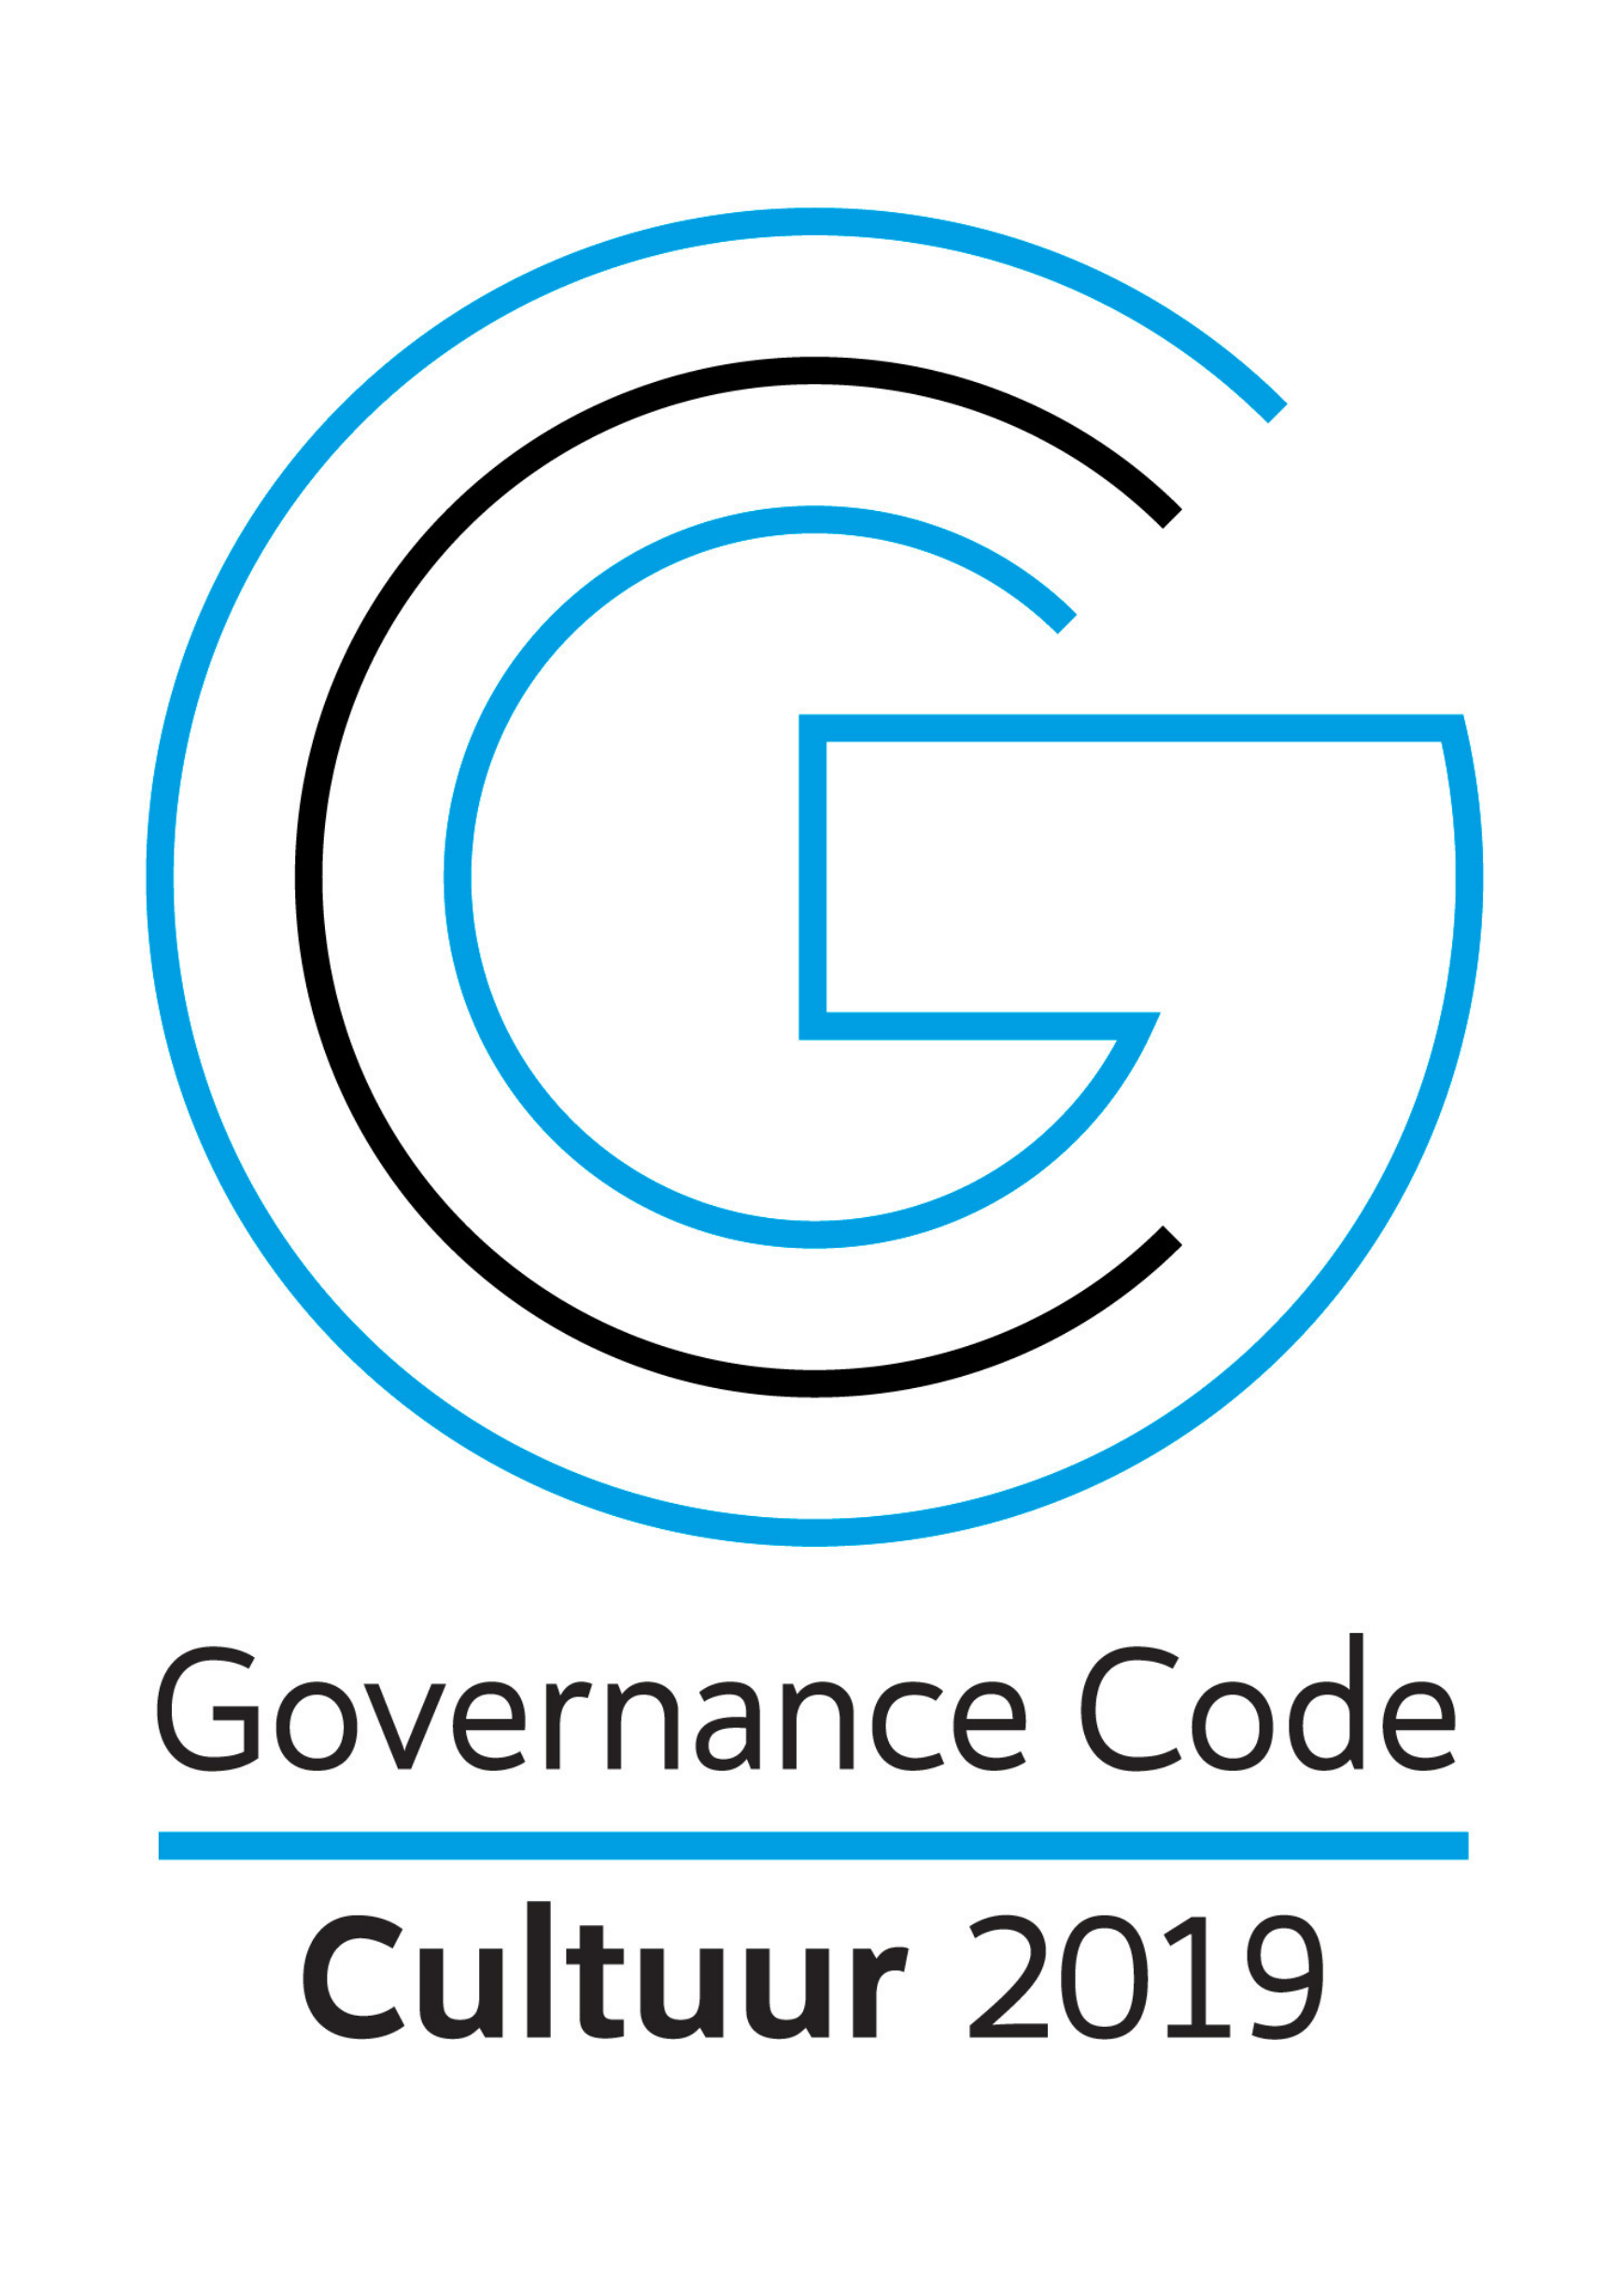 stichting touchstones past de principes en aanbevelingen van de Governance Code Cultuur 2019 toe.’